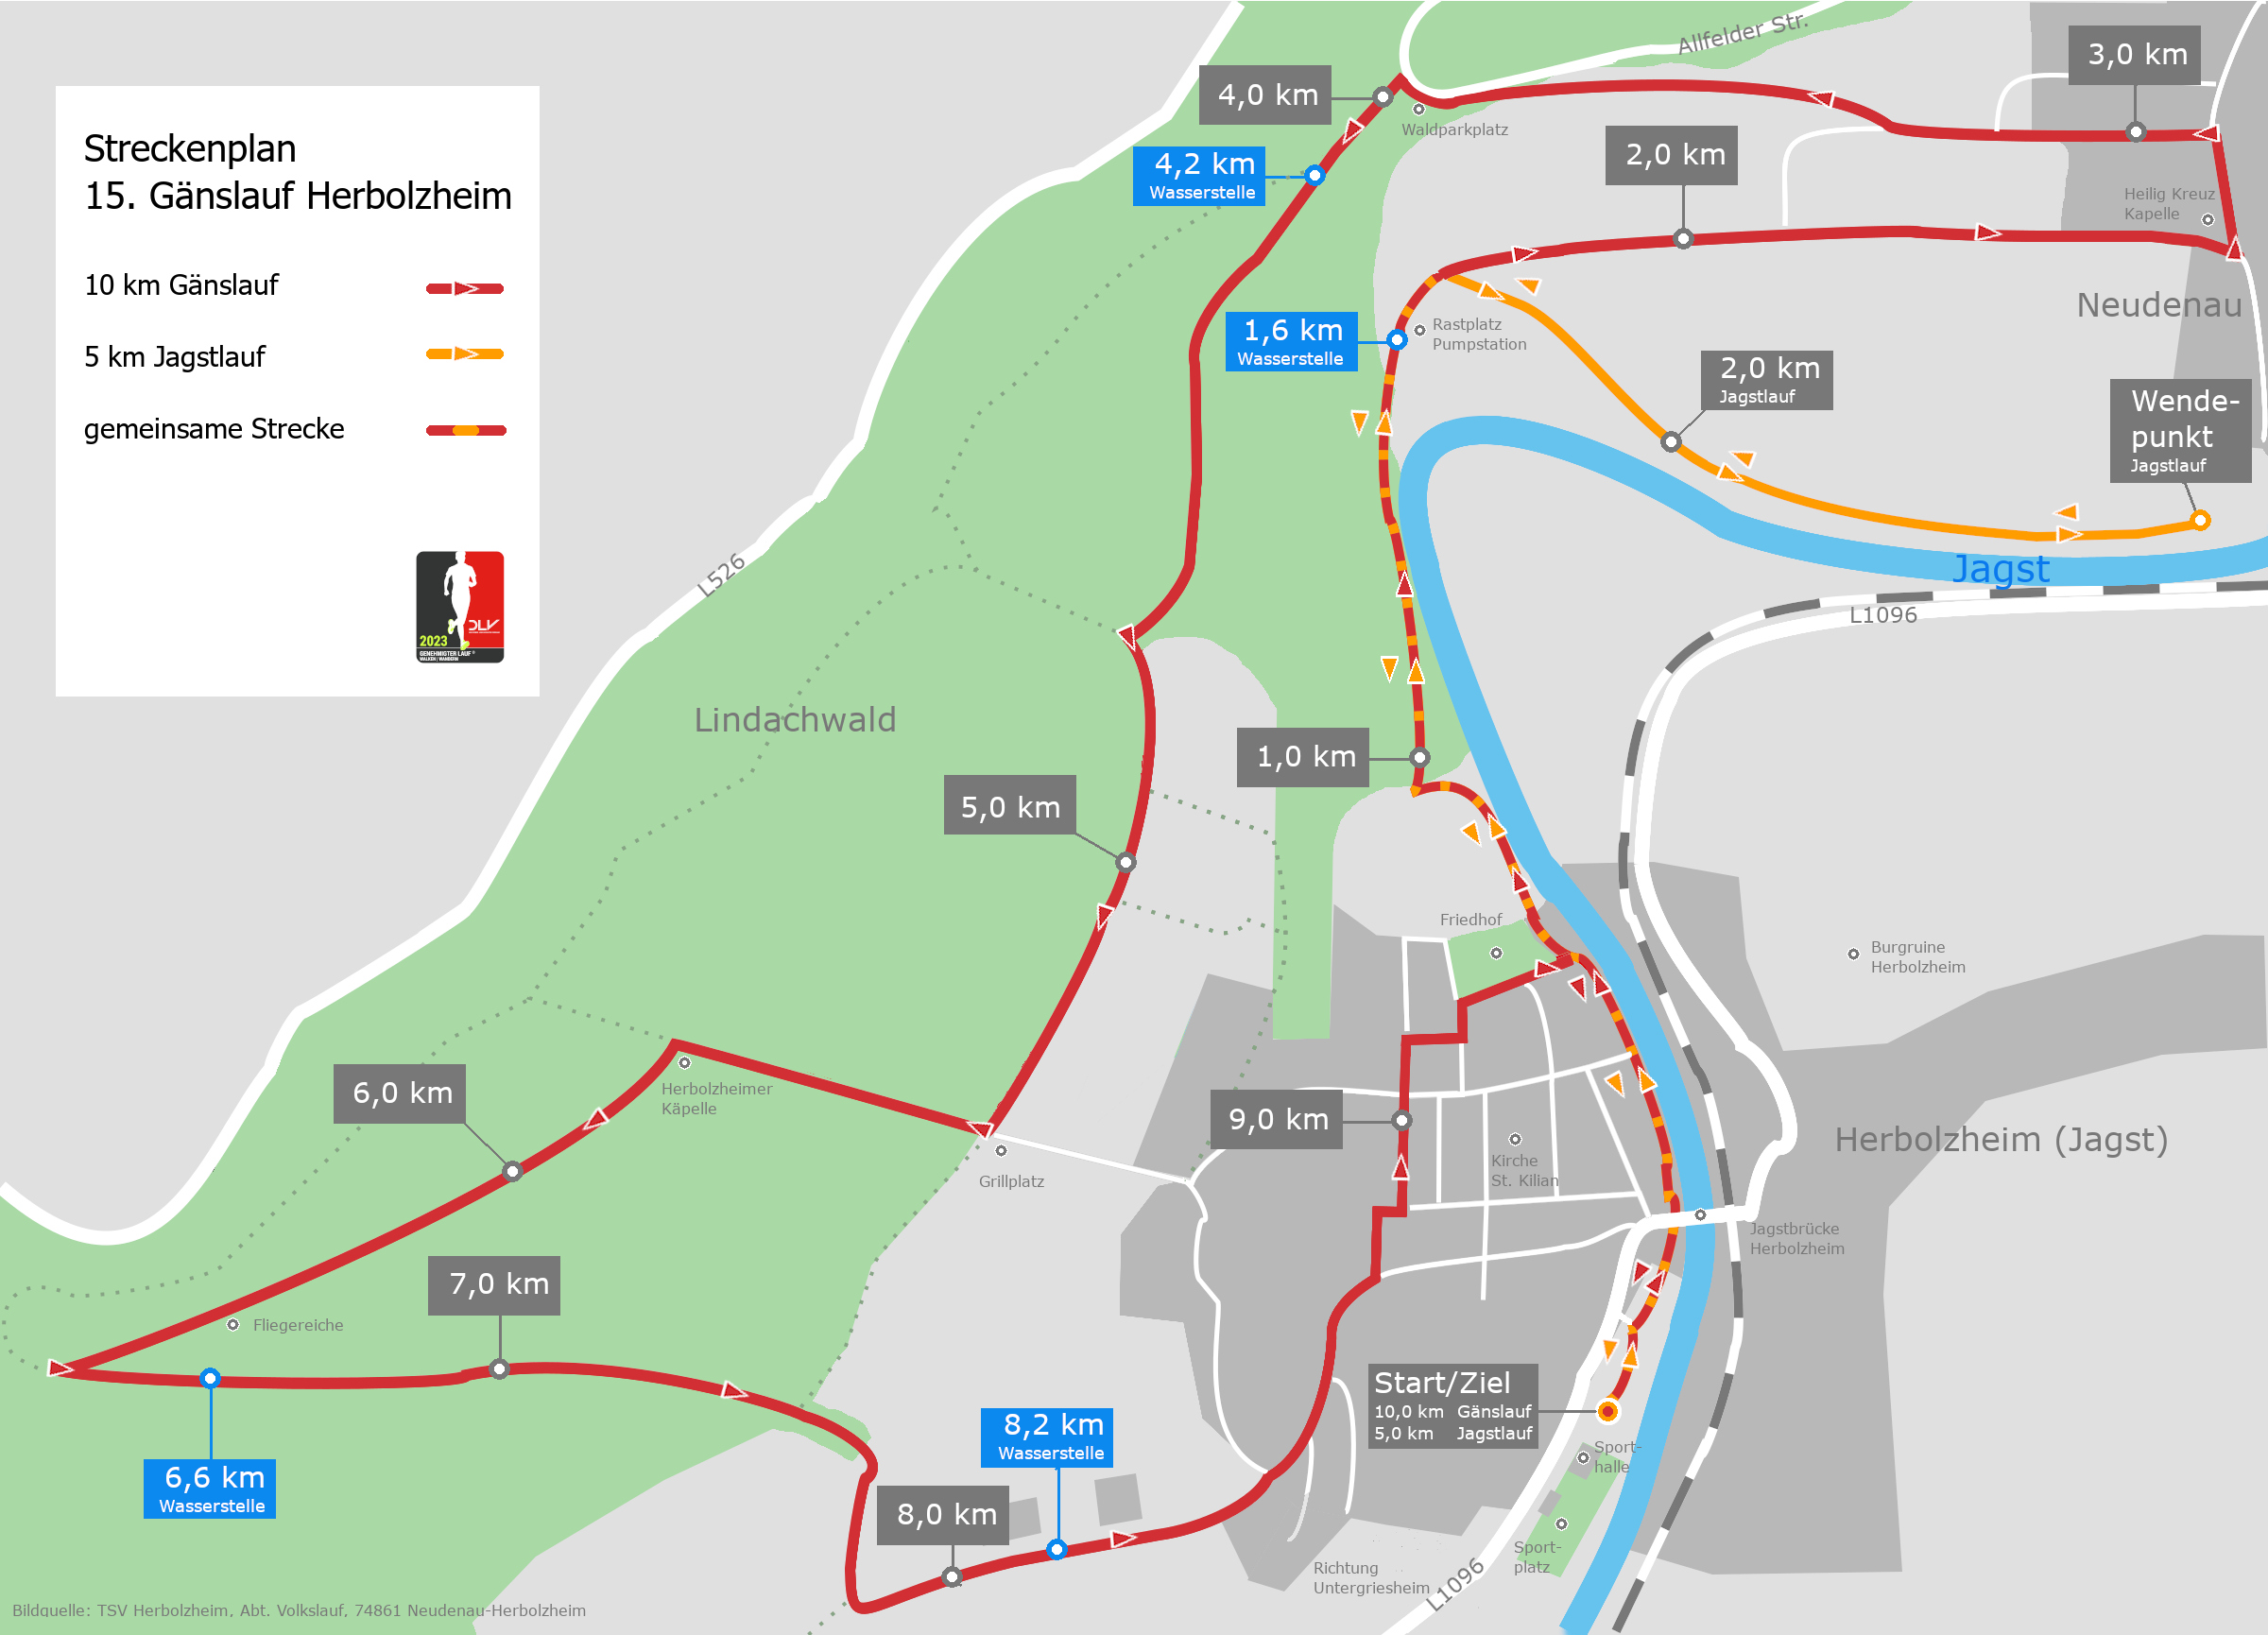 Streckenplan 16. Gänslauf Herbolzheim (10 km und 5km Lauf)